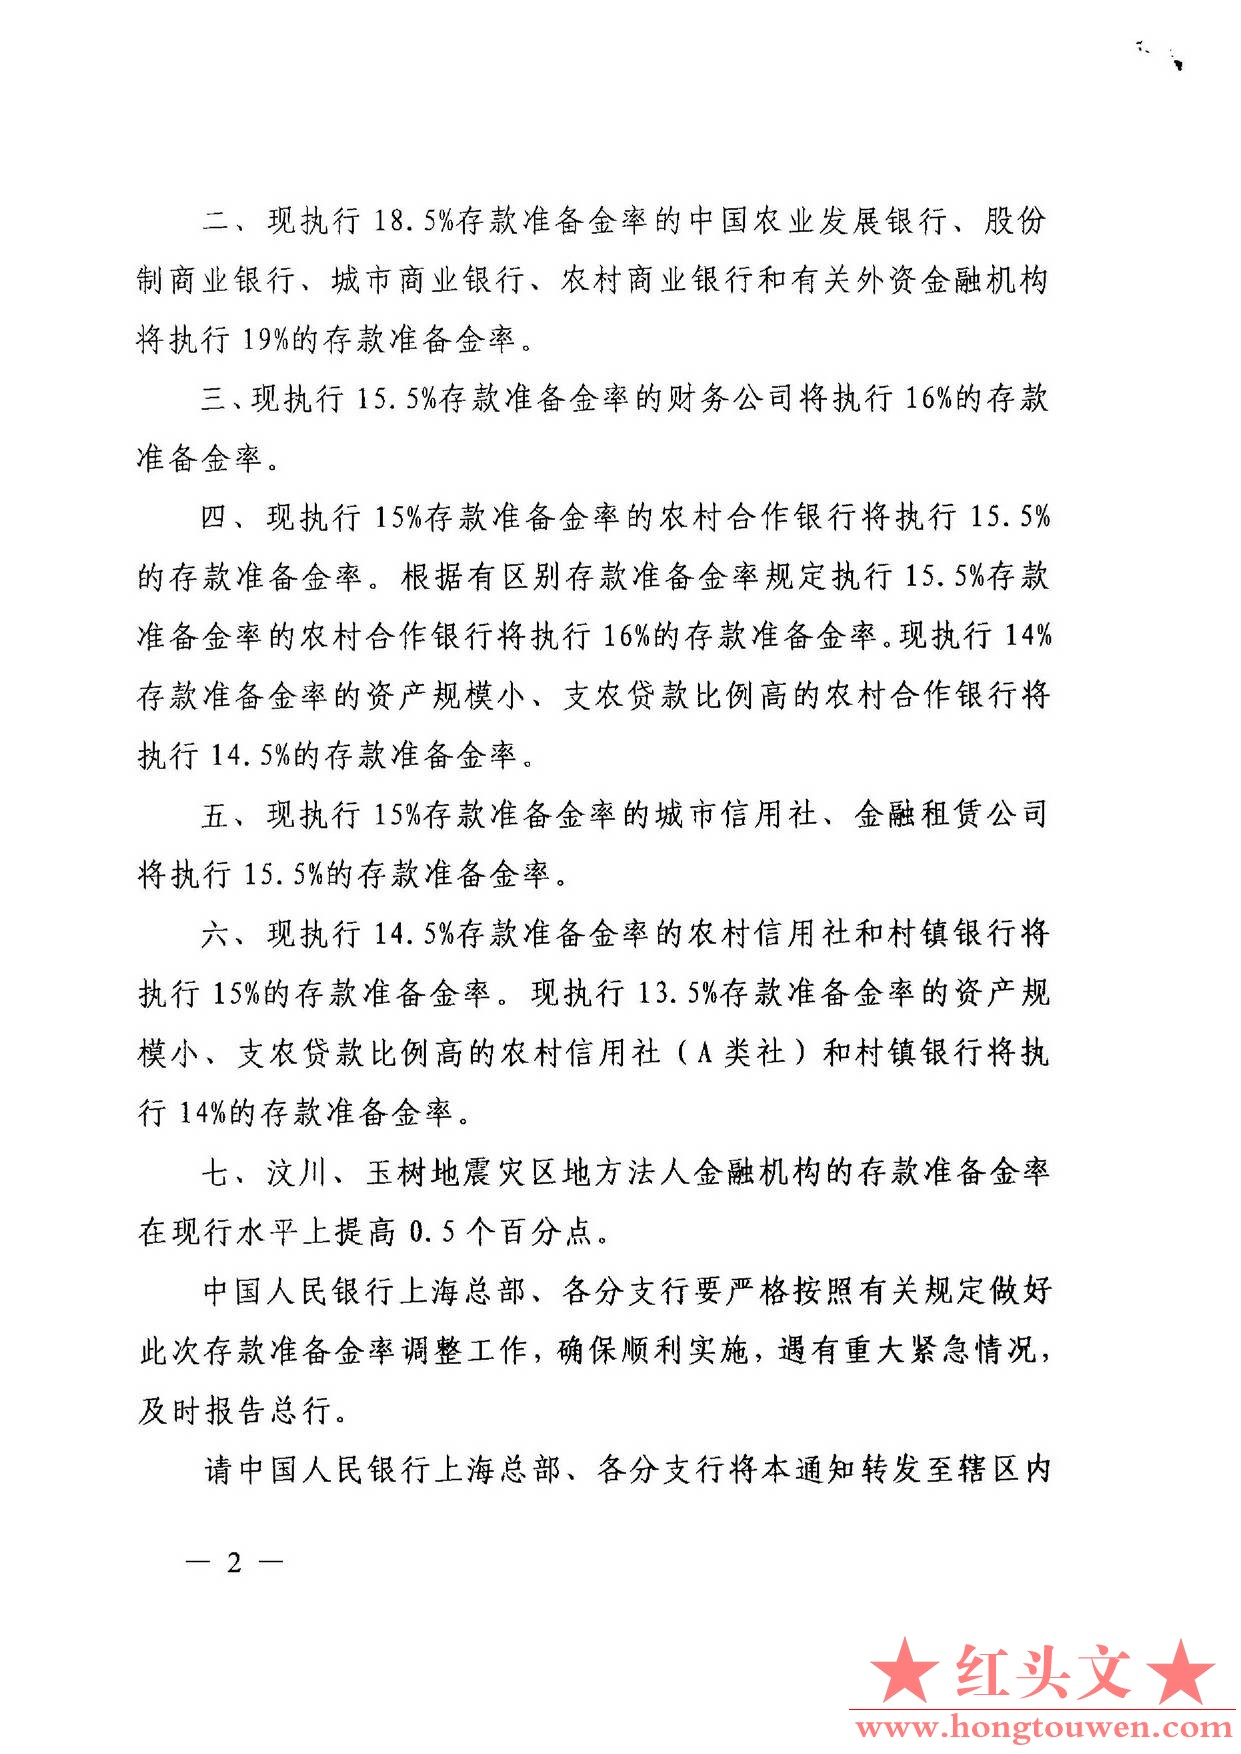 银发[2011]117号-中国人民银行关于上调人民币存款准备金率的通知_页面_2.jpg.jpg